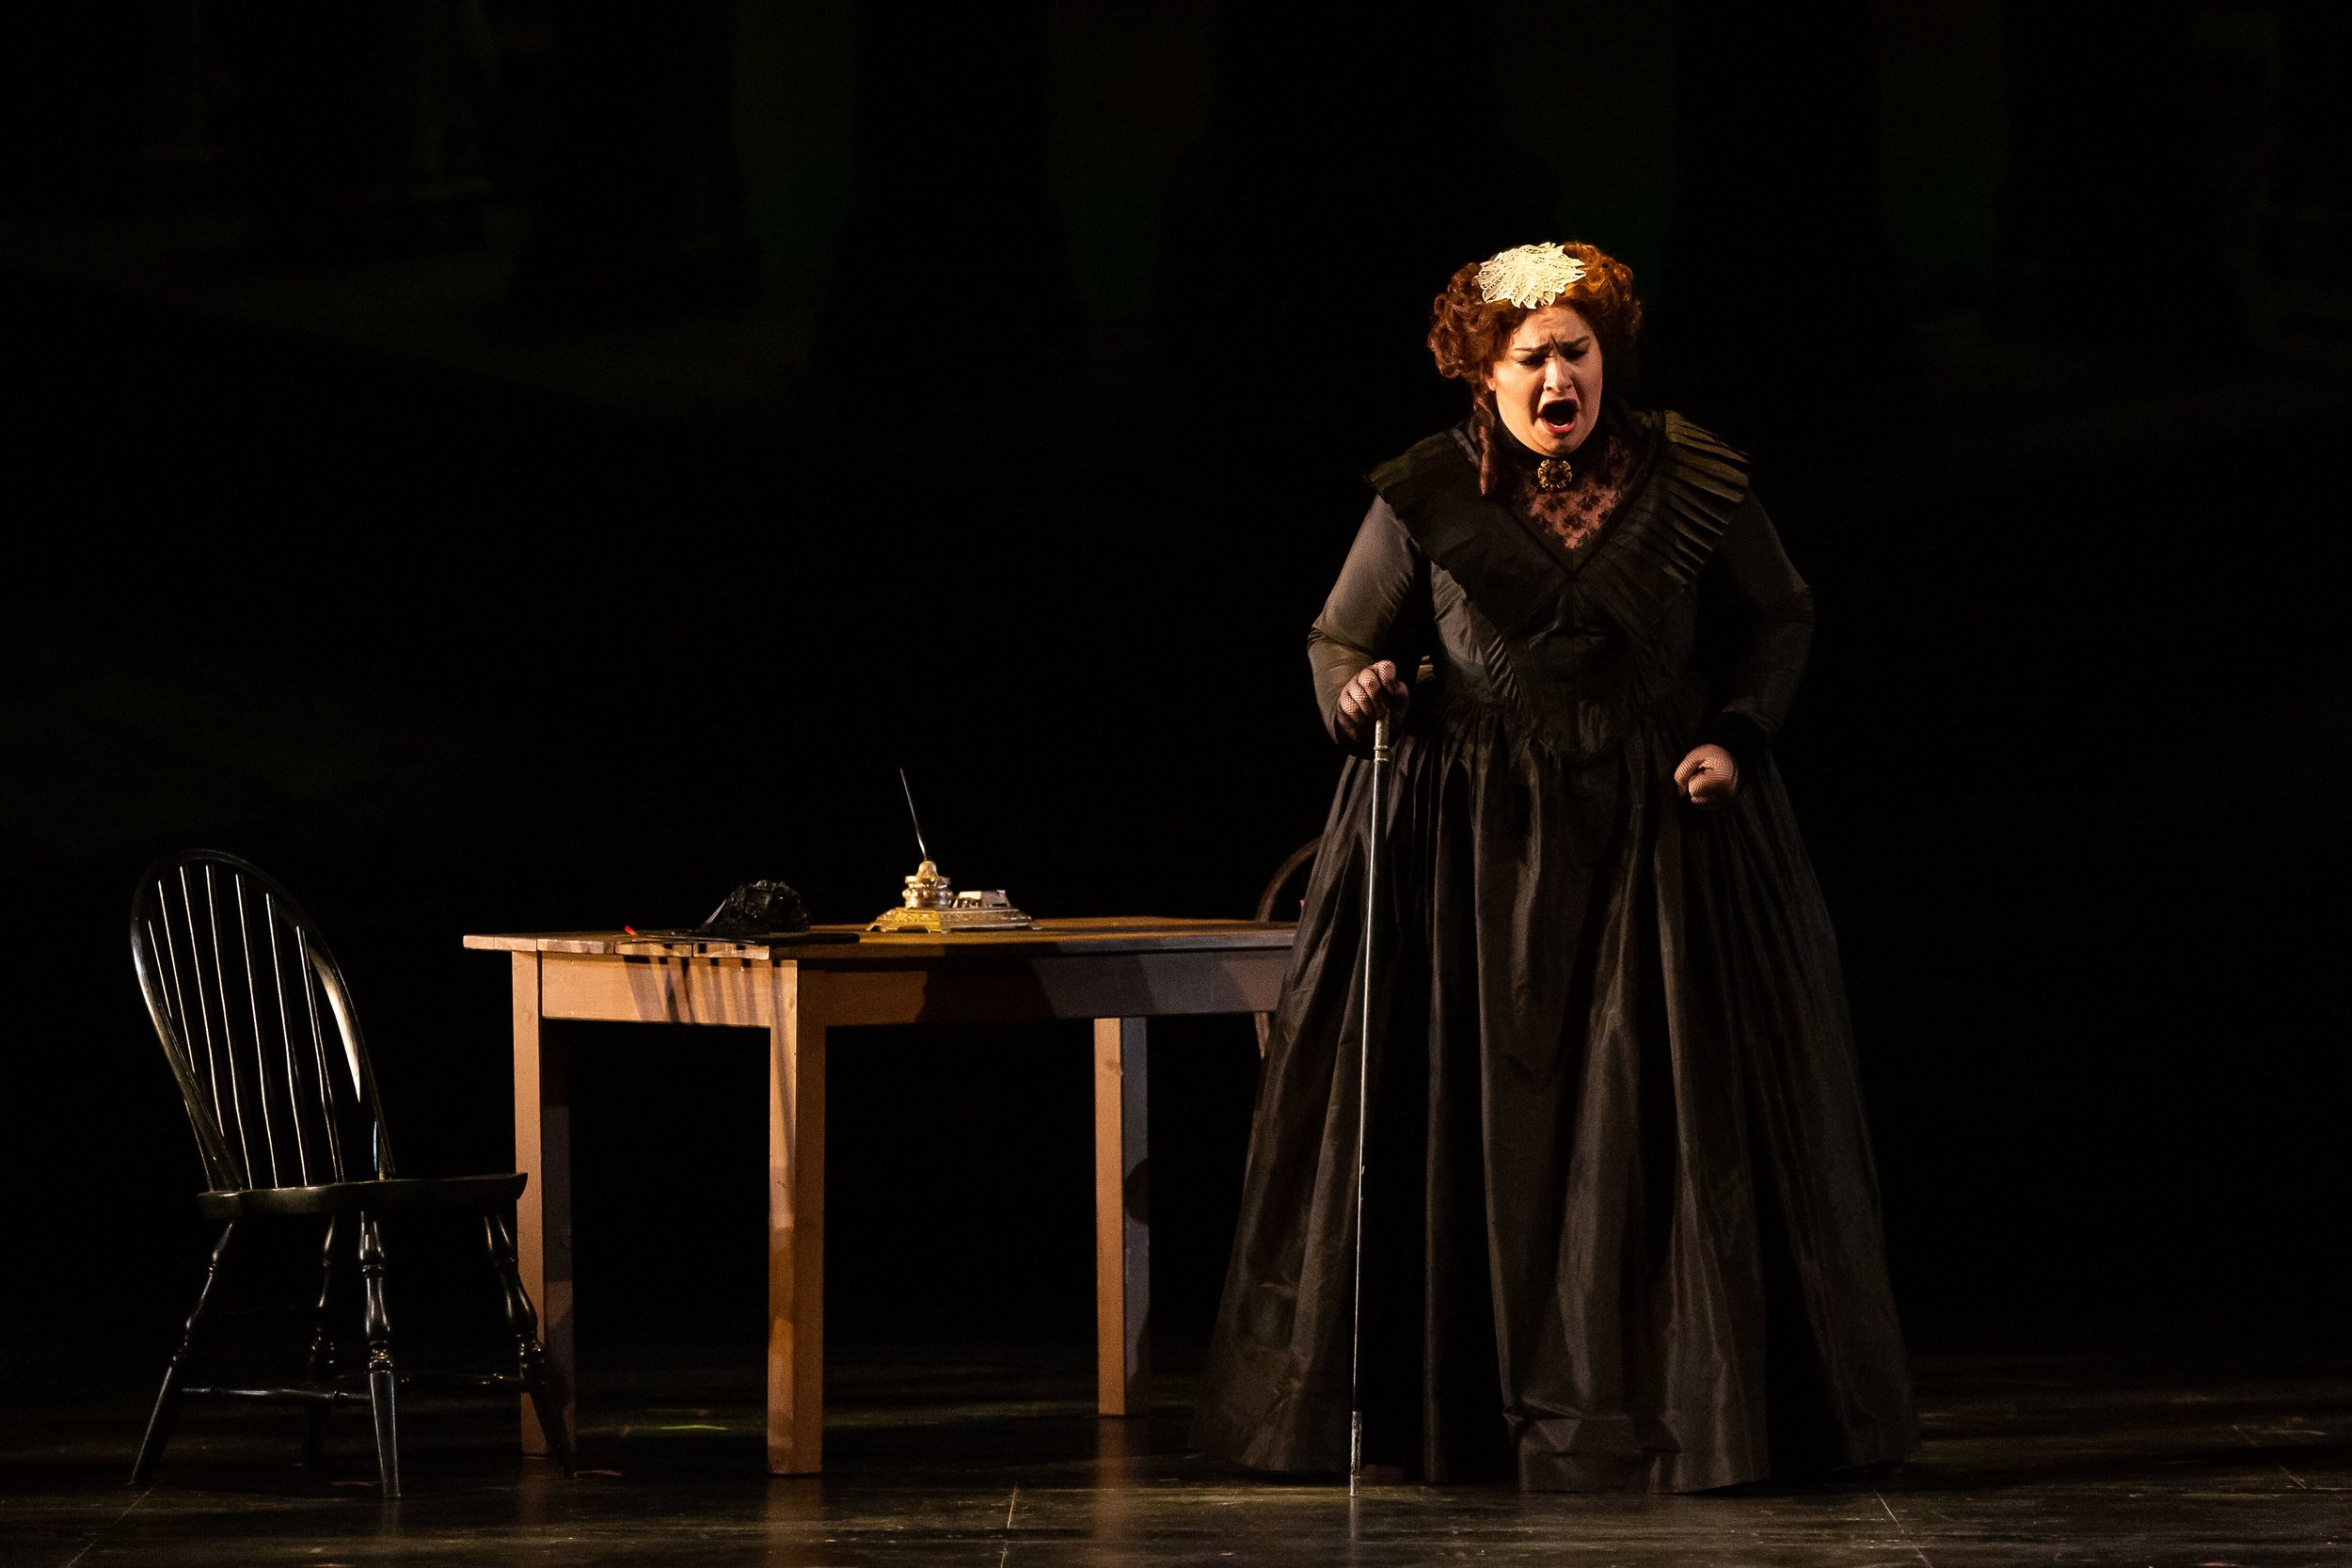  Lindsay as La Zia Principessa in Puccini’s Suor Angelica with Nardus Williams (soprano) 